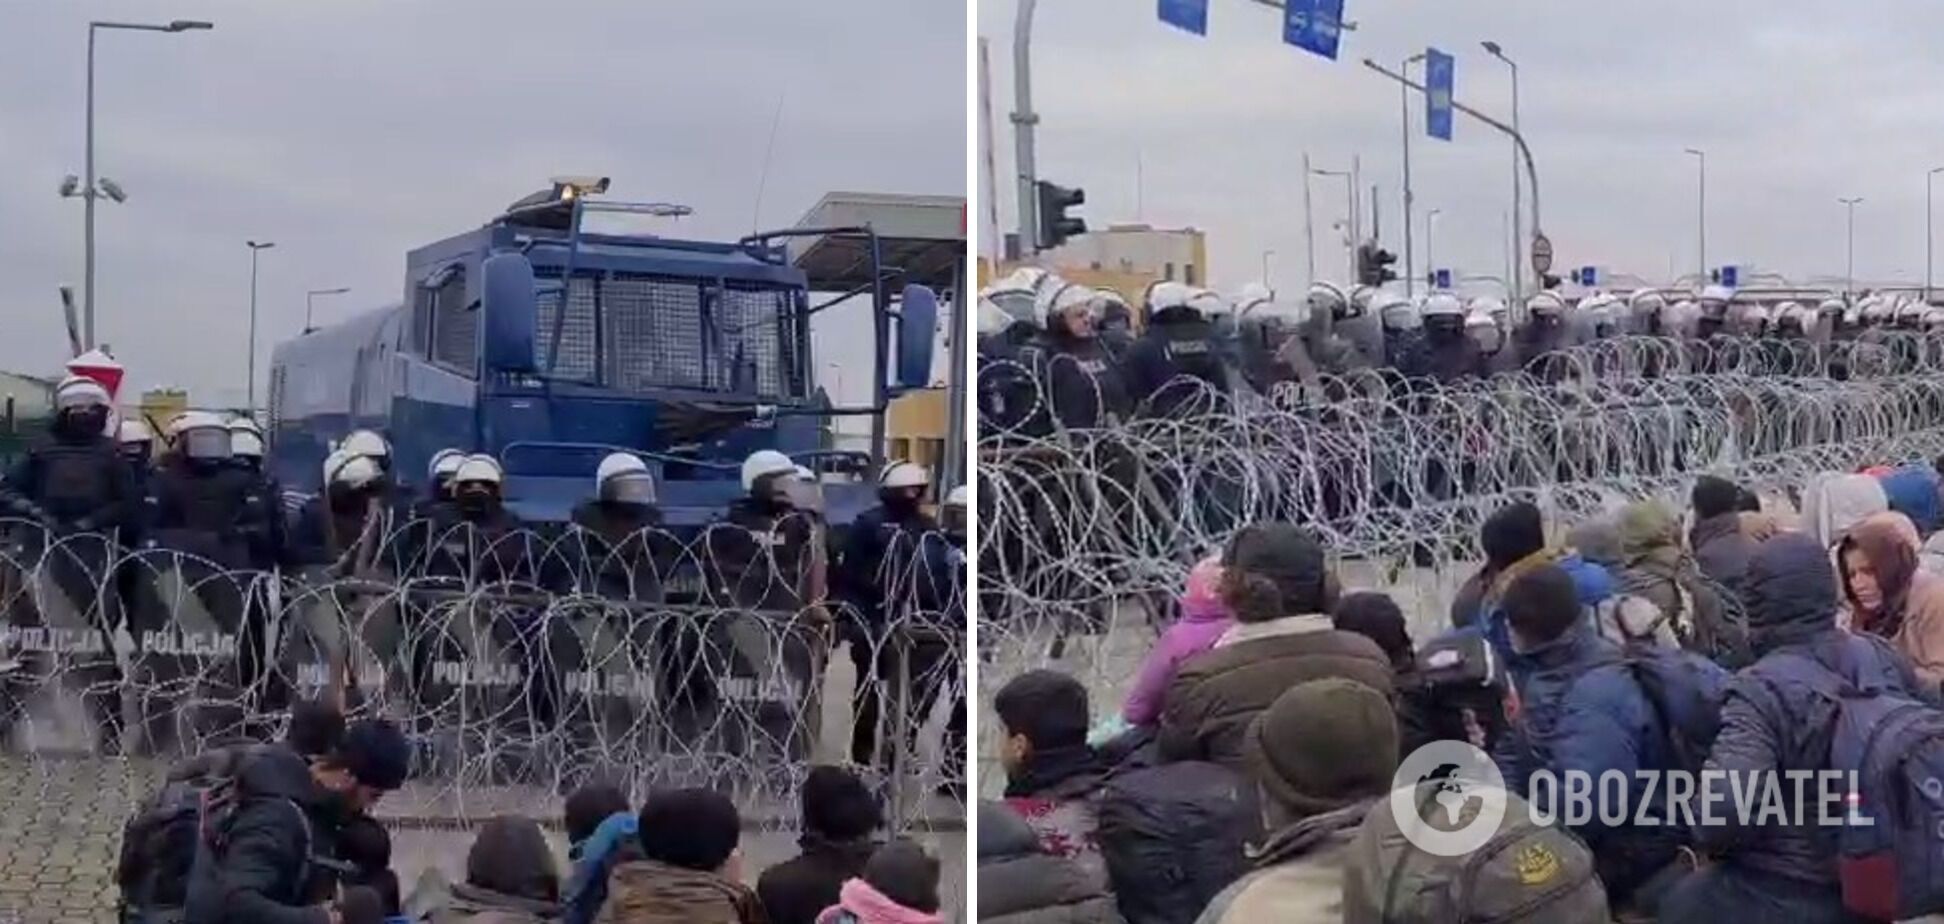 Полиция Польши выставила против мигрантов водометы